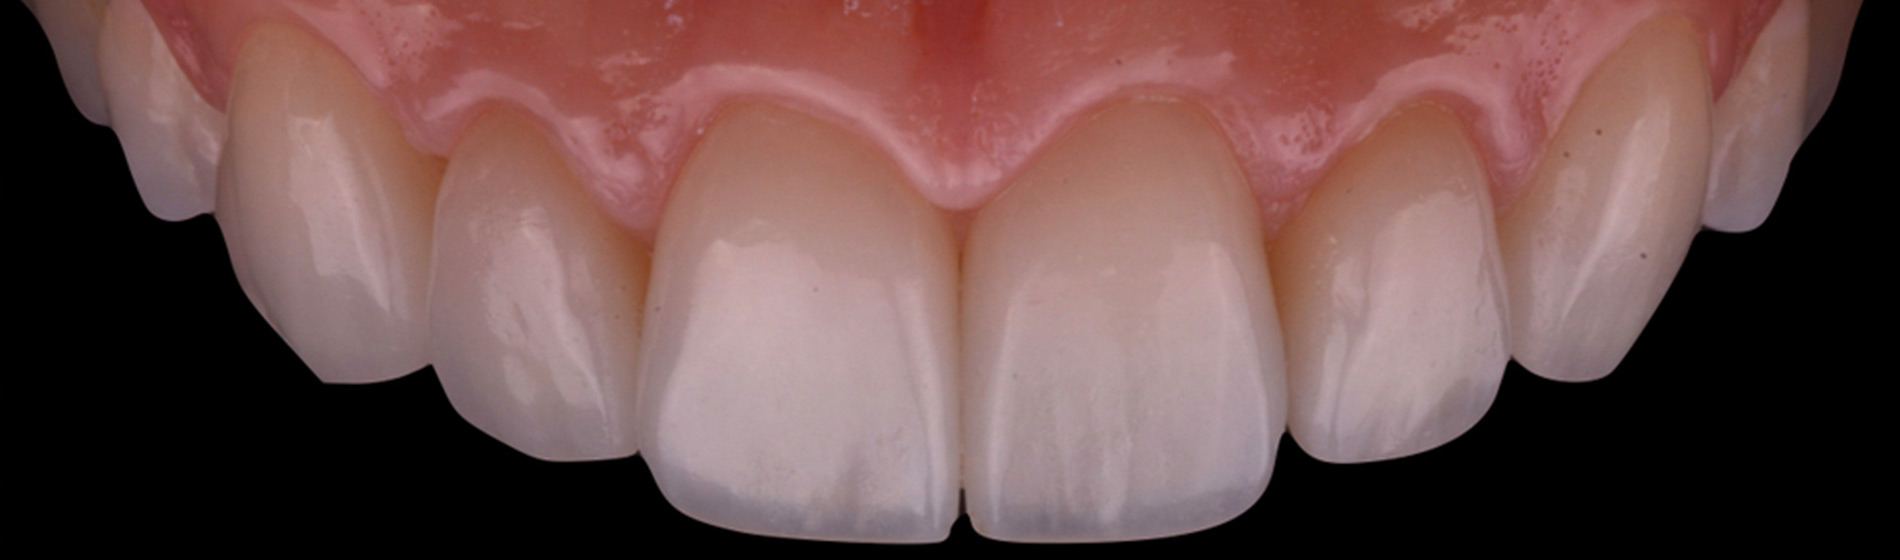 Lentes de Contato Dental em Taguatinga. O Tratamento estético odontológico com lentes de contato dental são capazes de transformar completamente o seu sorriso em poucos dias. Conheça o diferencial da Rame em Taguatinga